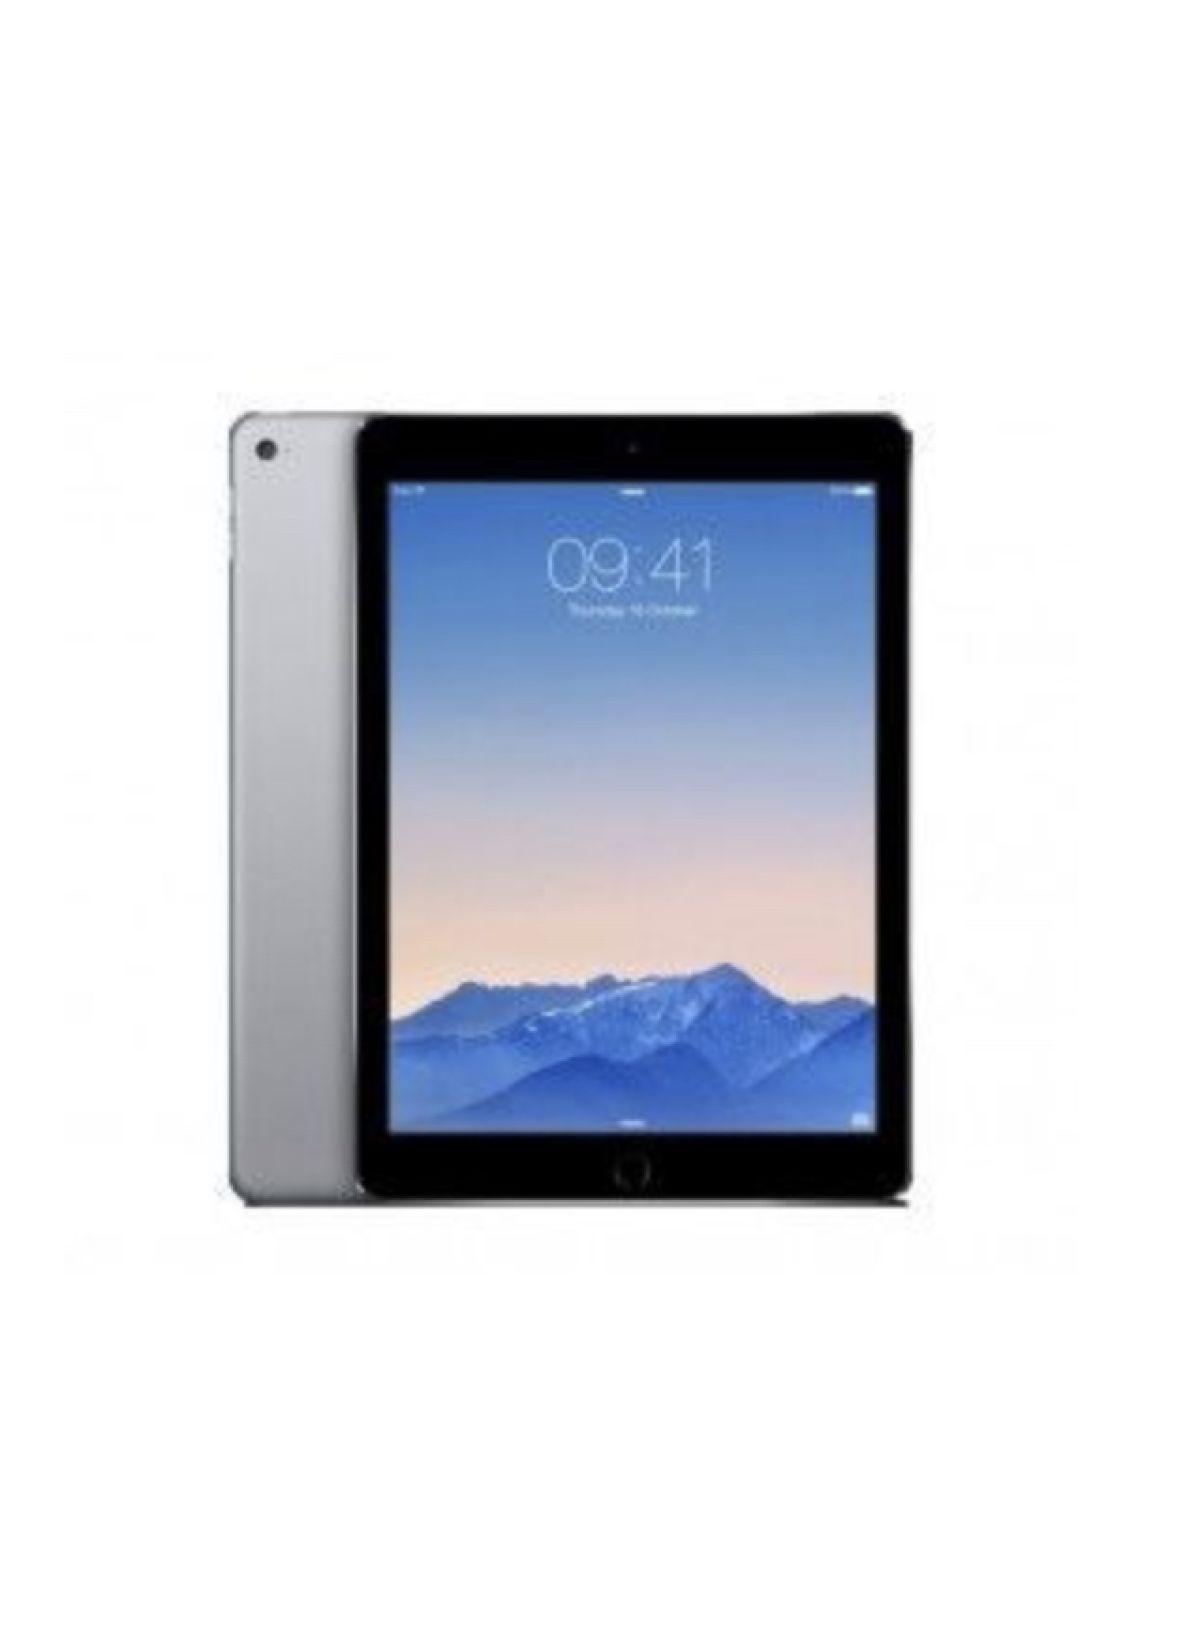 Apple iPad Air A1474 WiFi 16 Go Gris sidéral